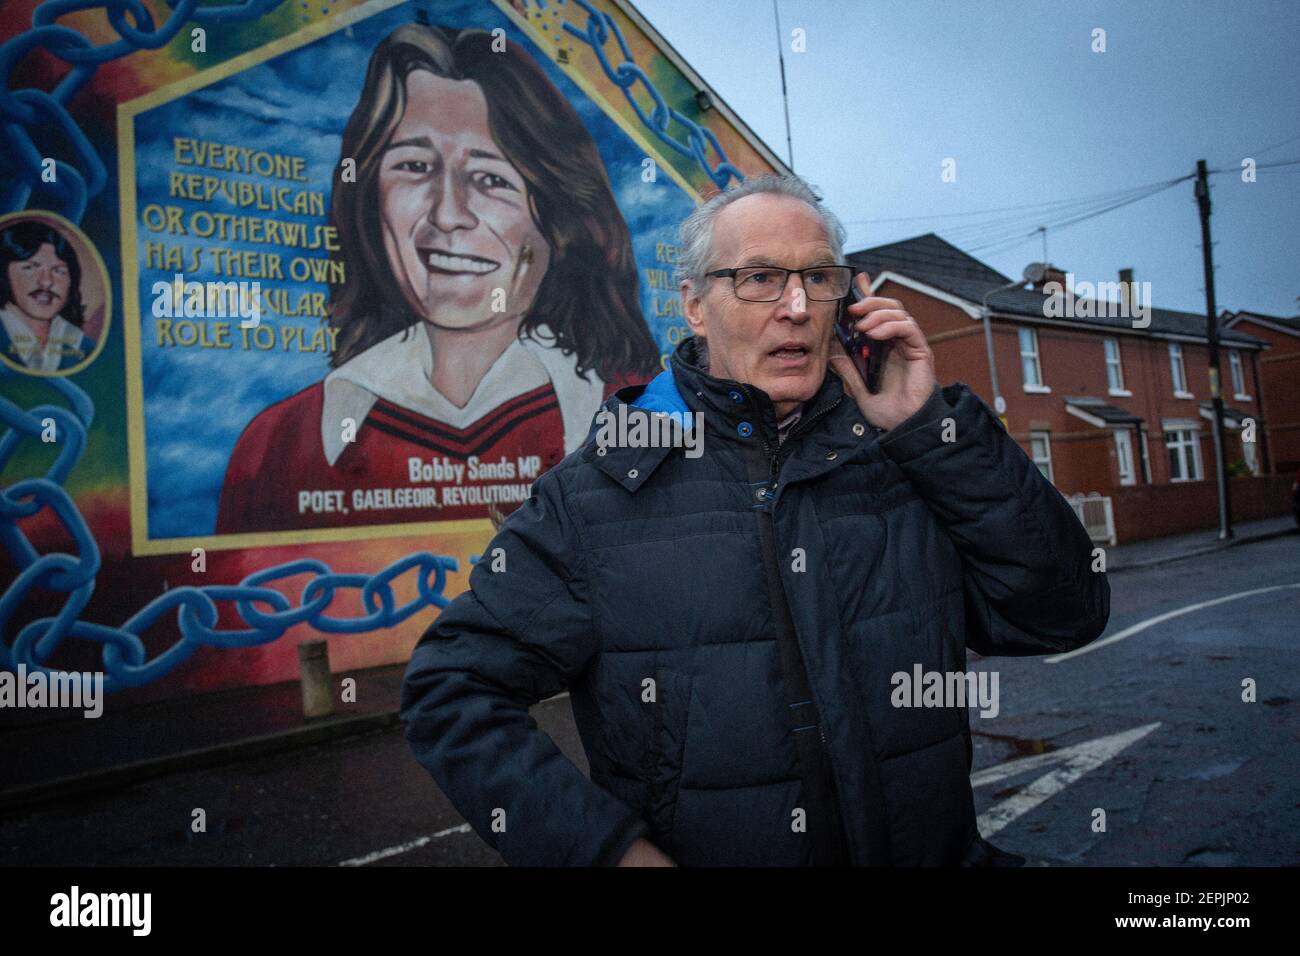 BELFAST, NORDIRLAND - Februar 23 Gerry Kelly vor dem Wandgemälde von Bobby Sands im Sinn Fein Hauptquartier erhält einen Anruf bezüglich Bombenalarm Stockfoto